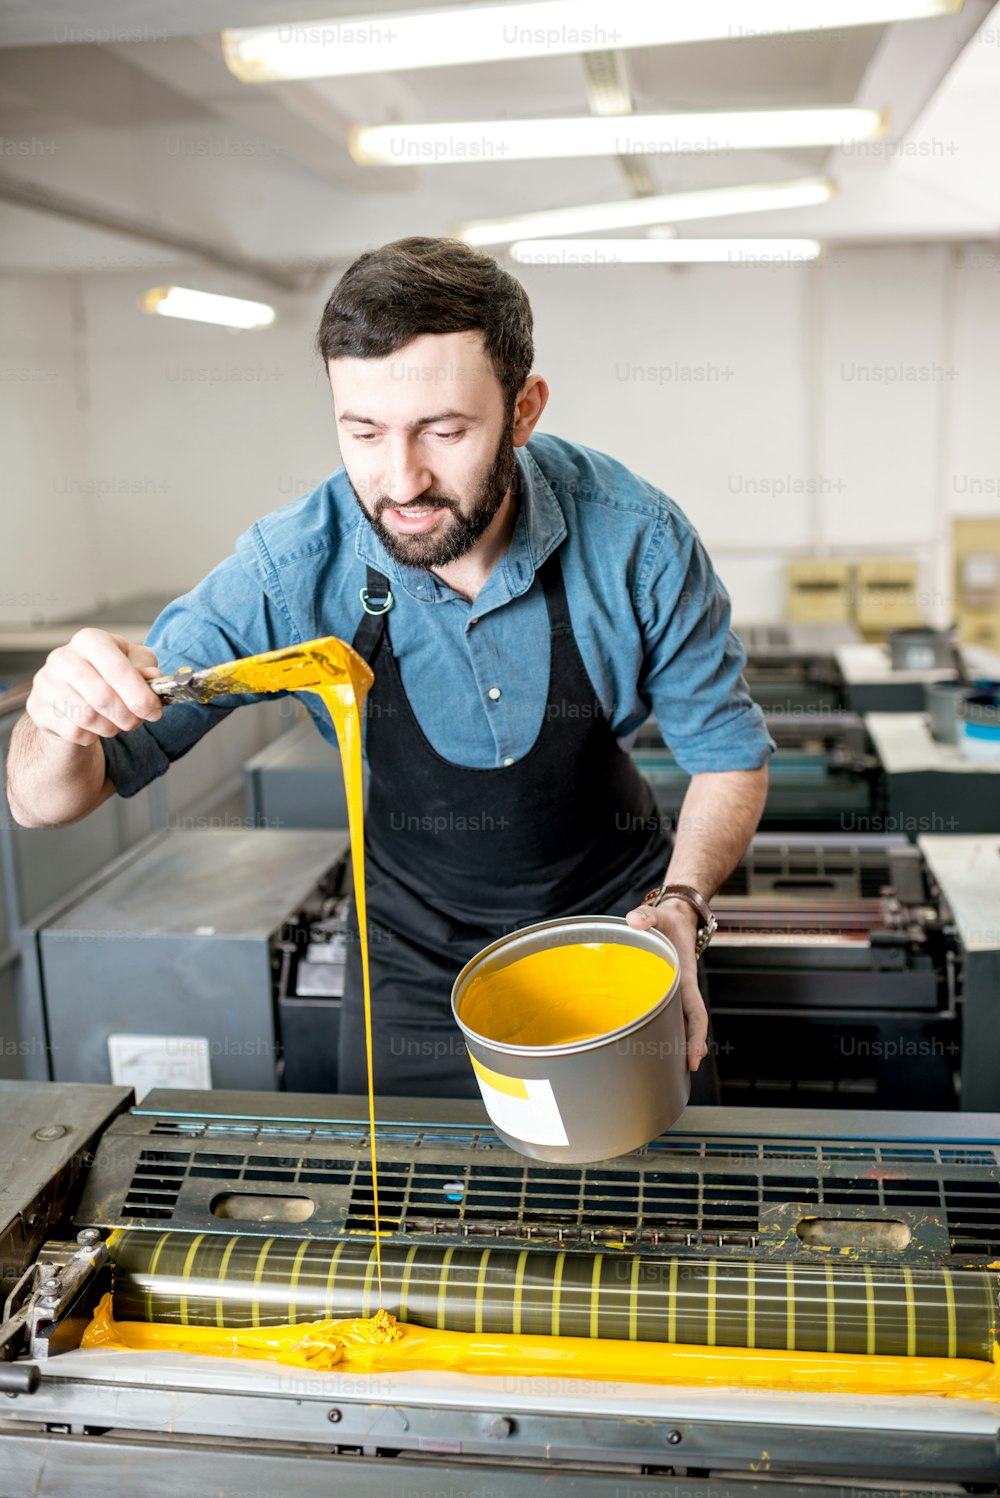 Typograf füllt gelbe Farbe in die Offsetmaschine in der Druckerei